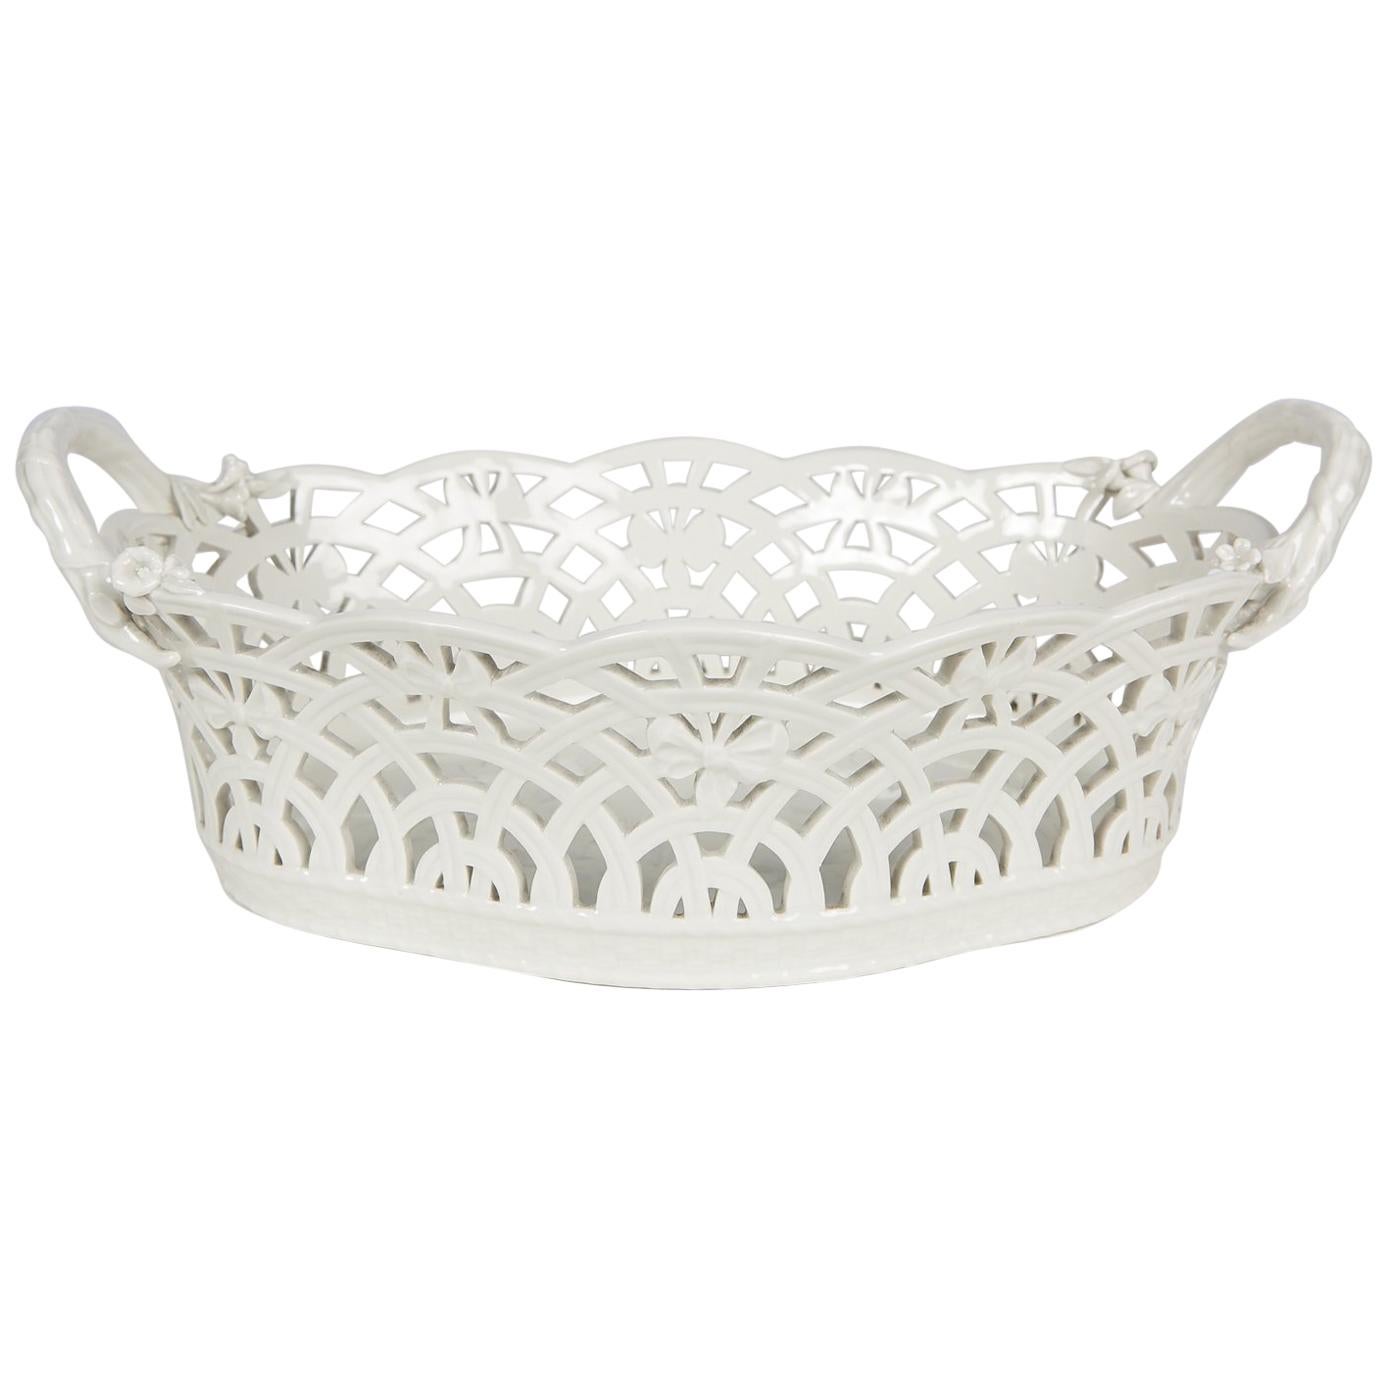 KPM White Antique Pierced Porcelain Basket